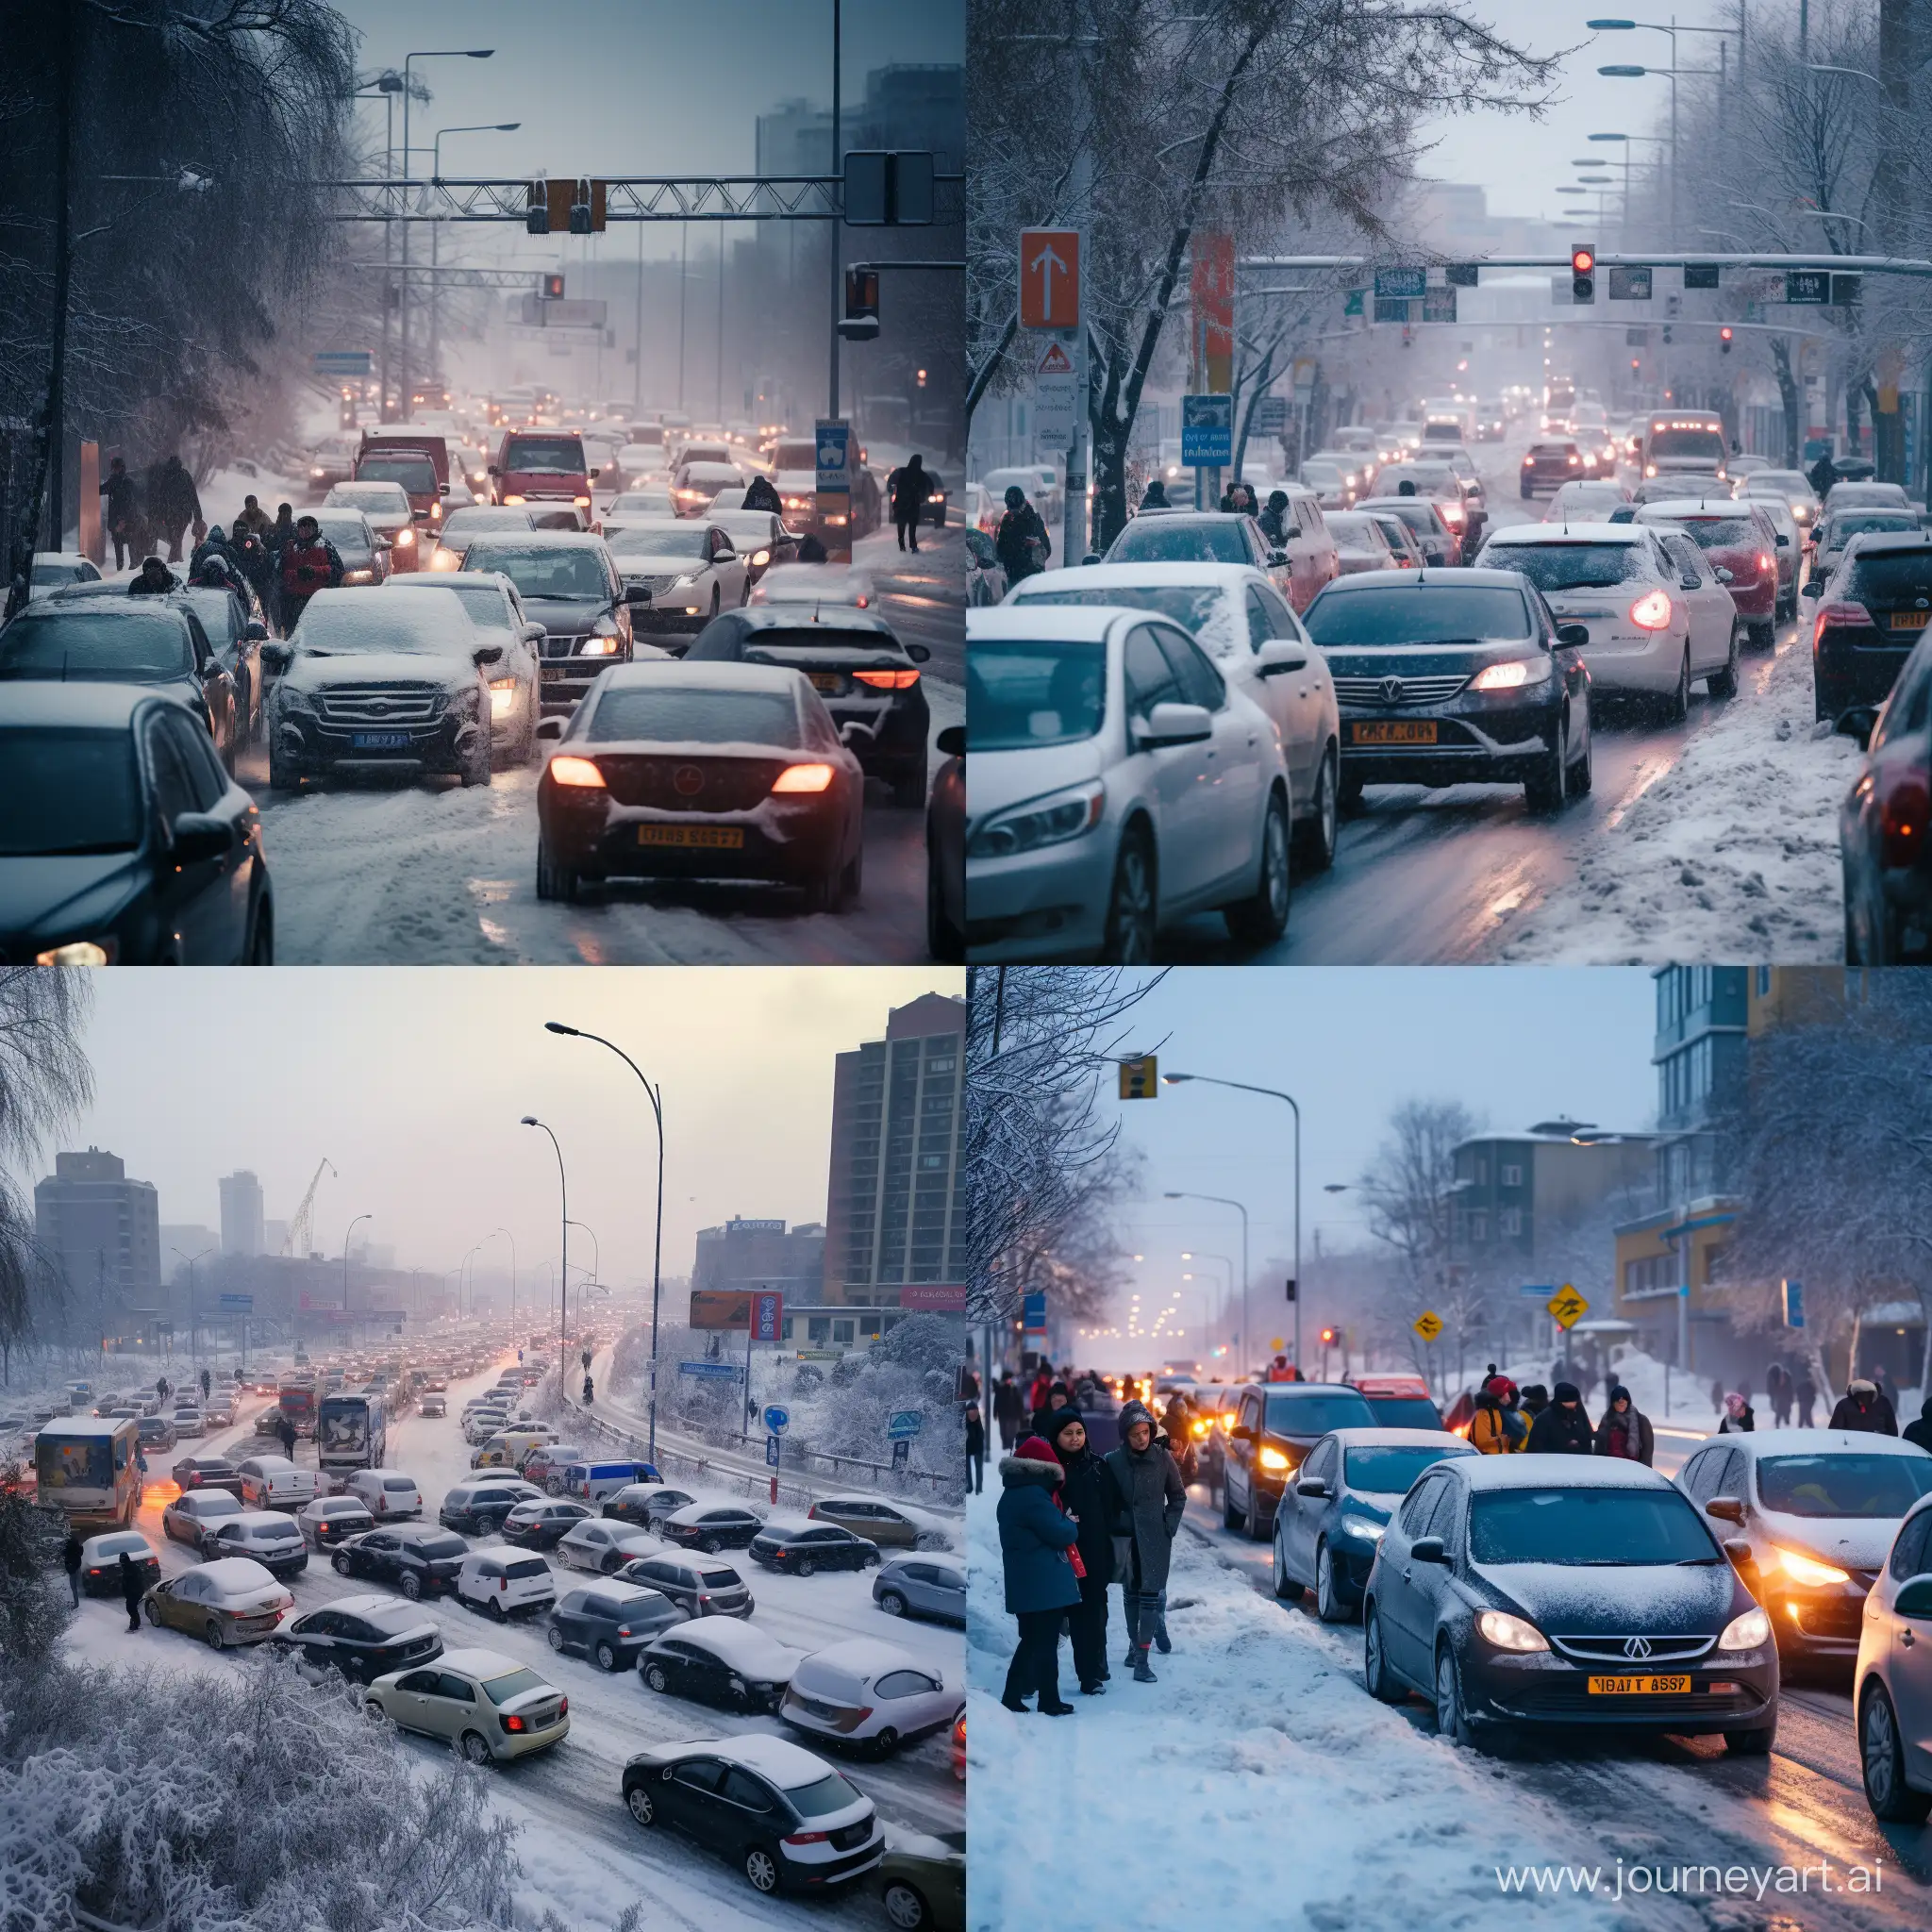 Snowstorm-Causes-Traffic-Jams-in-Kaliningrad